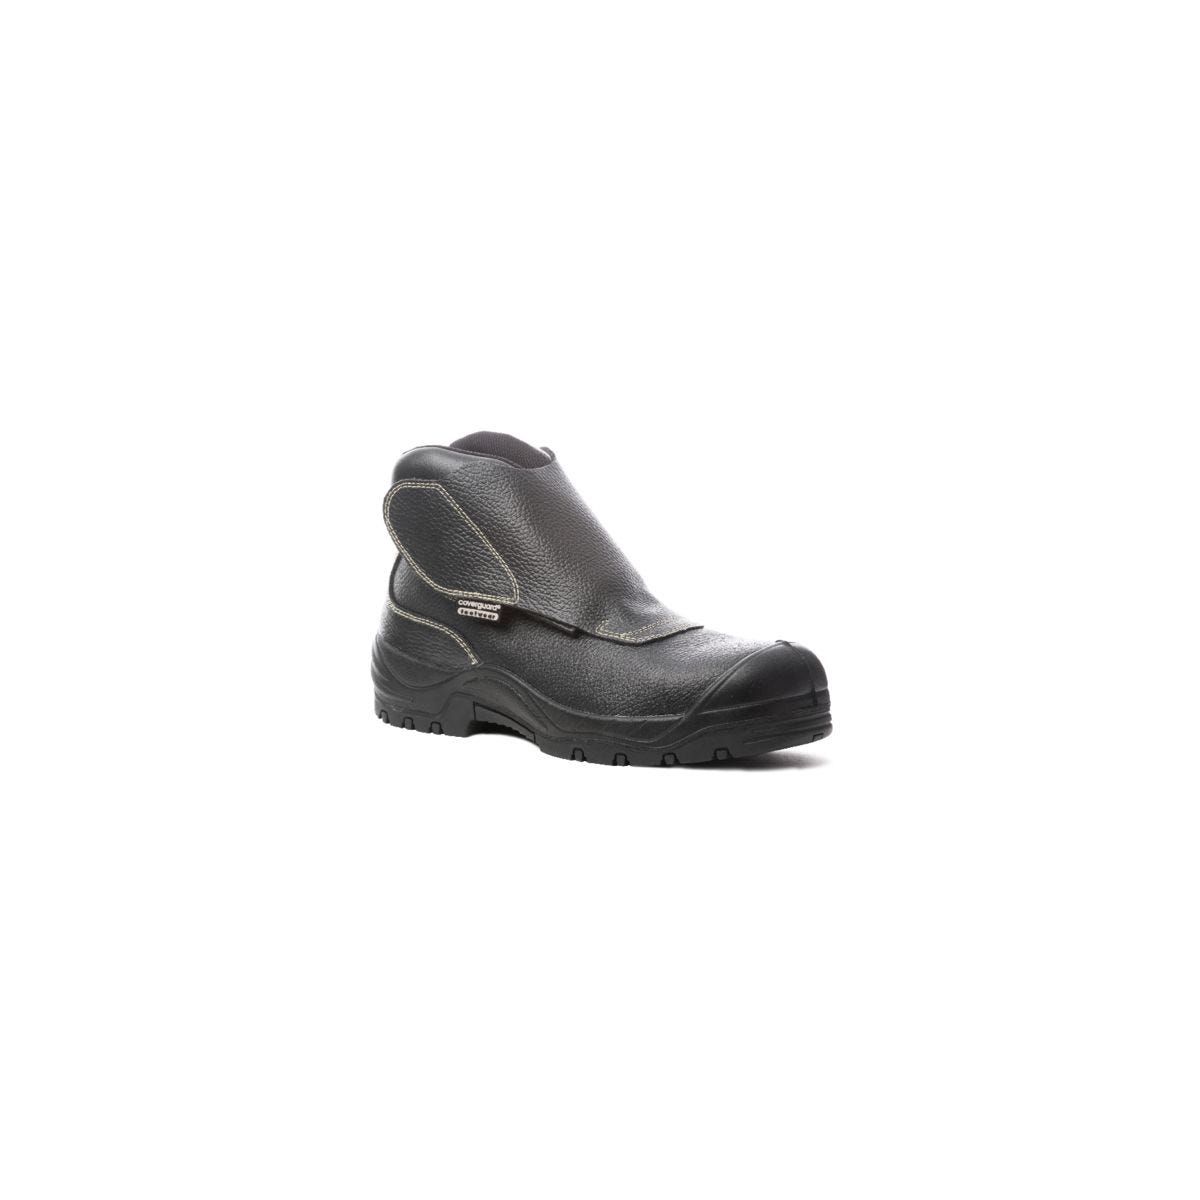 Chaussure de sécurité QUADRUFITE S3 soudeur composite noire - COVERGUARD - Taille 40 0